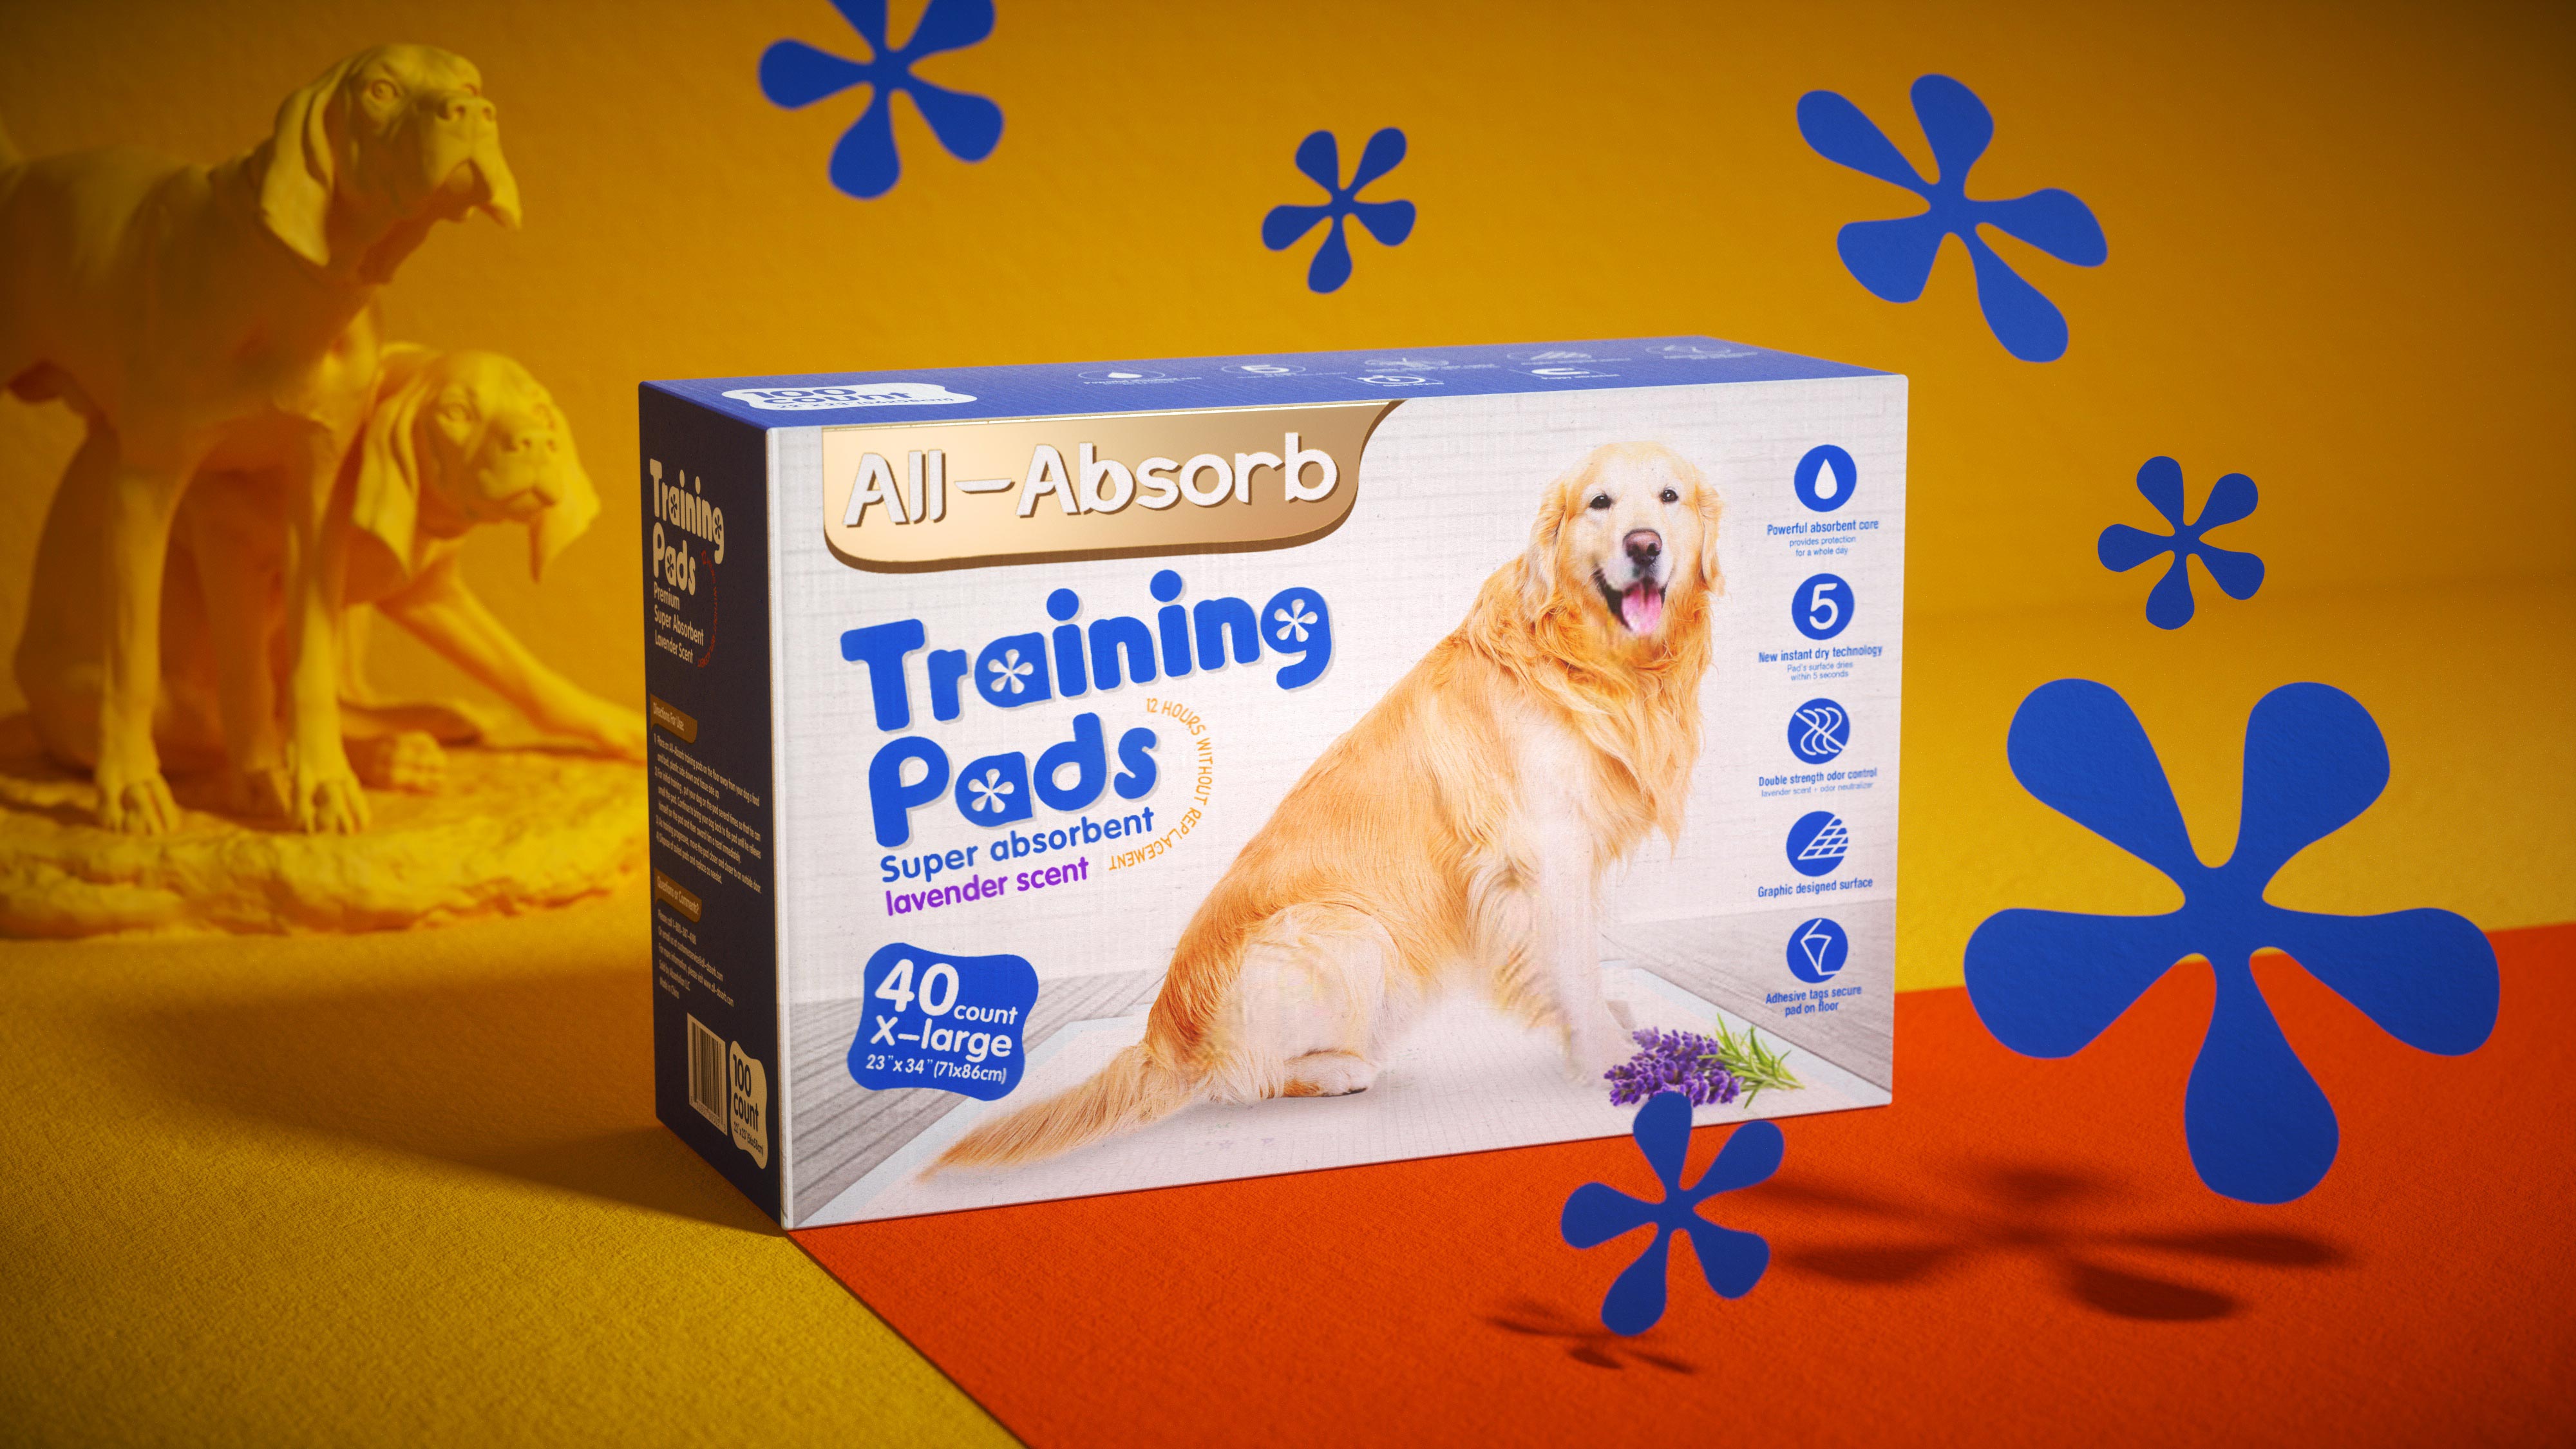 原创包装设计/芜湖悠派/ALL-Absorb宠物尿垫包装设计 米克包装设计